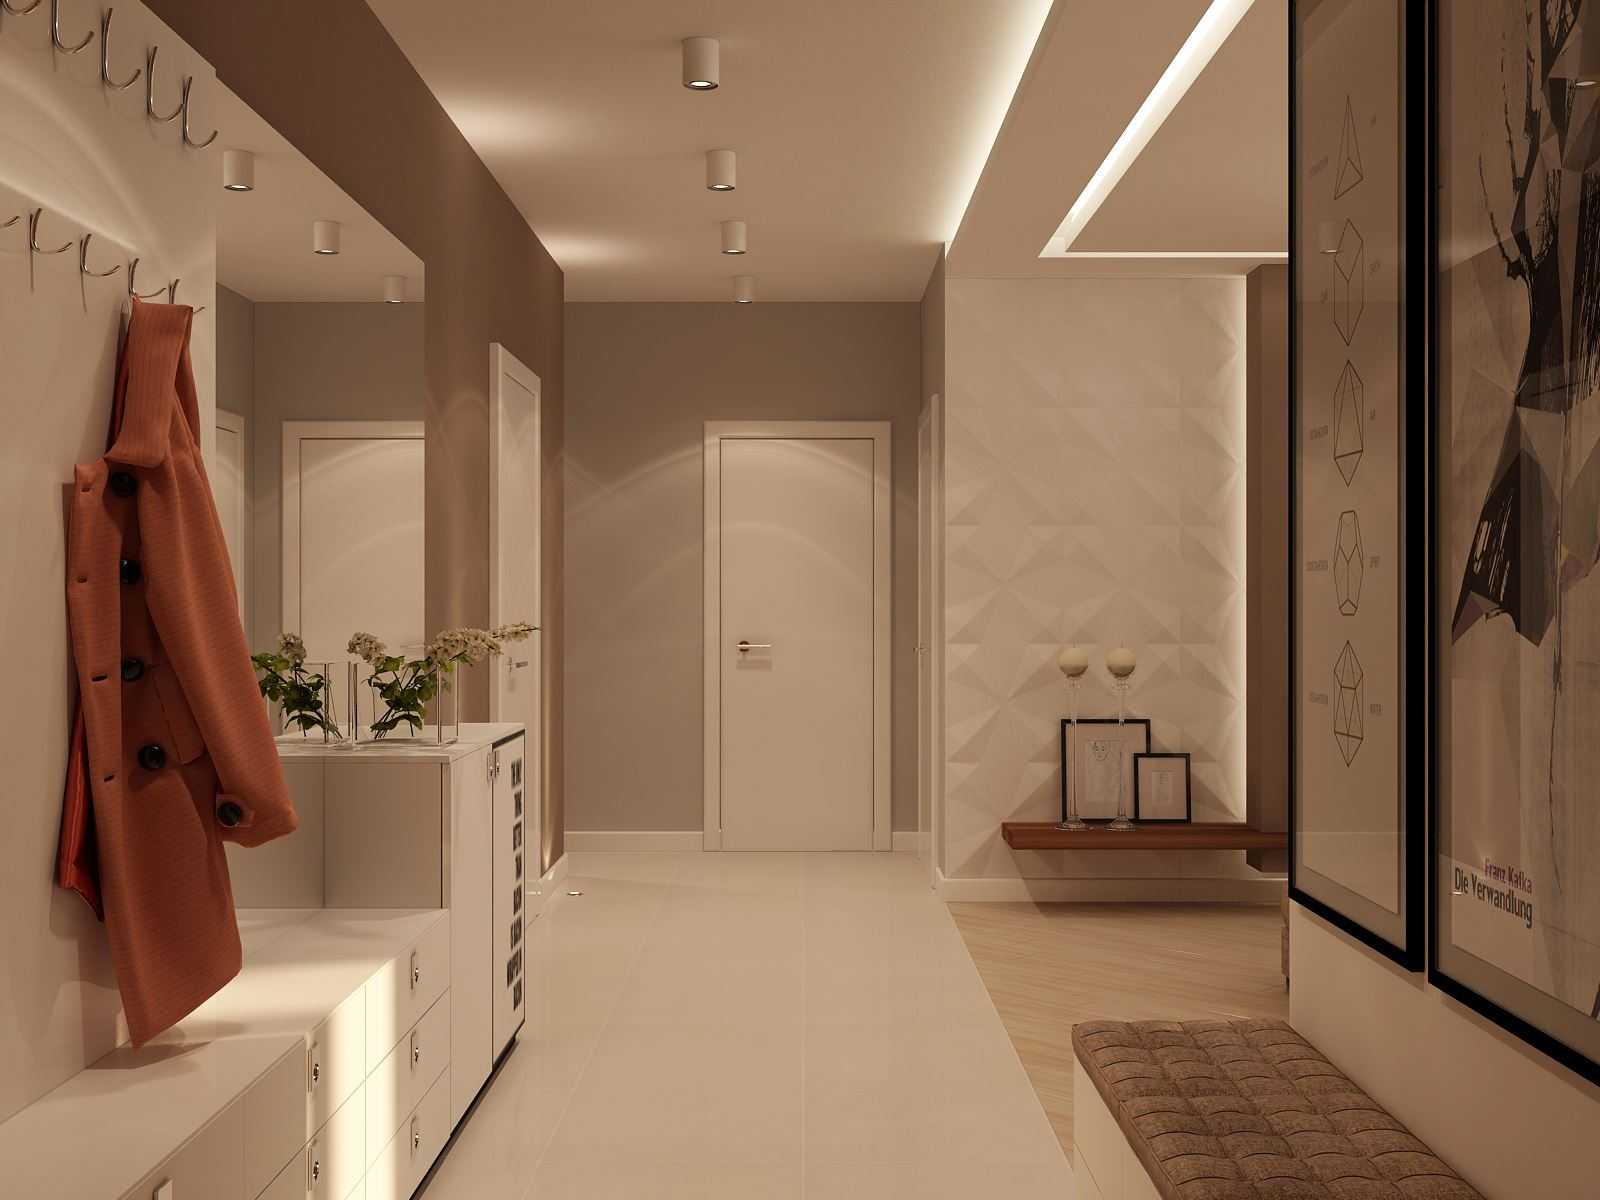 Маленькая прихожая: идеи для стильного оформления коридора (48 фото) | дизайн и интерьер